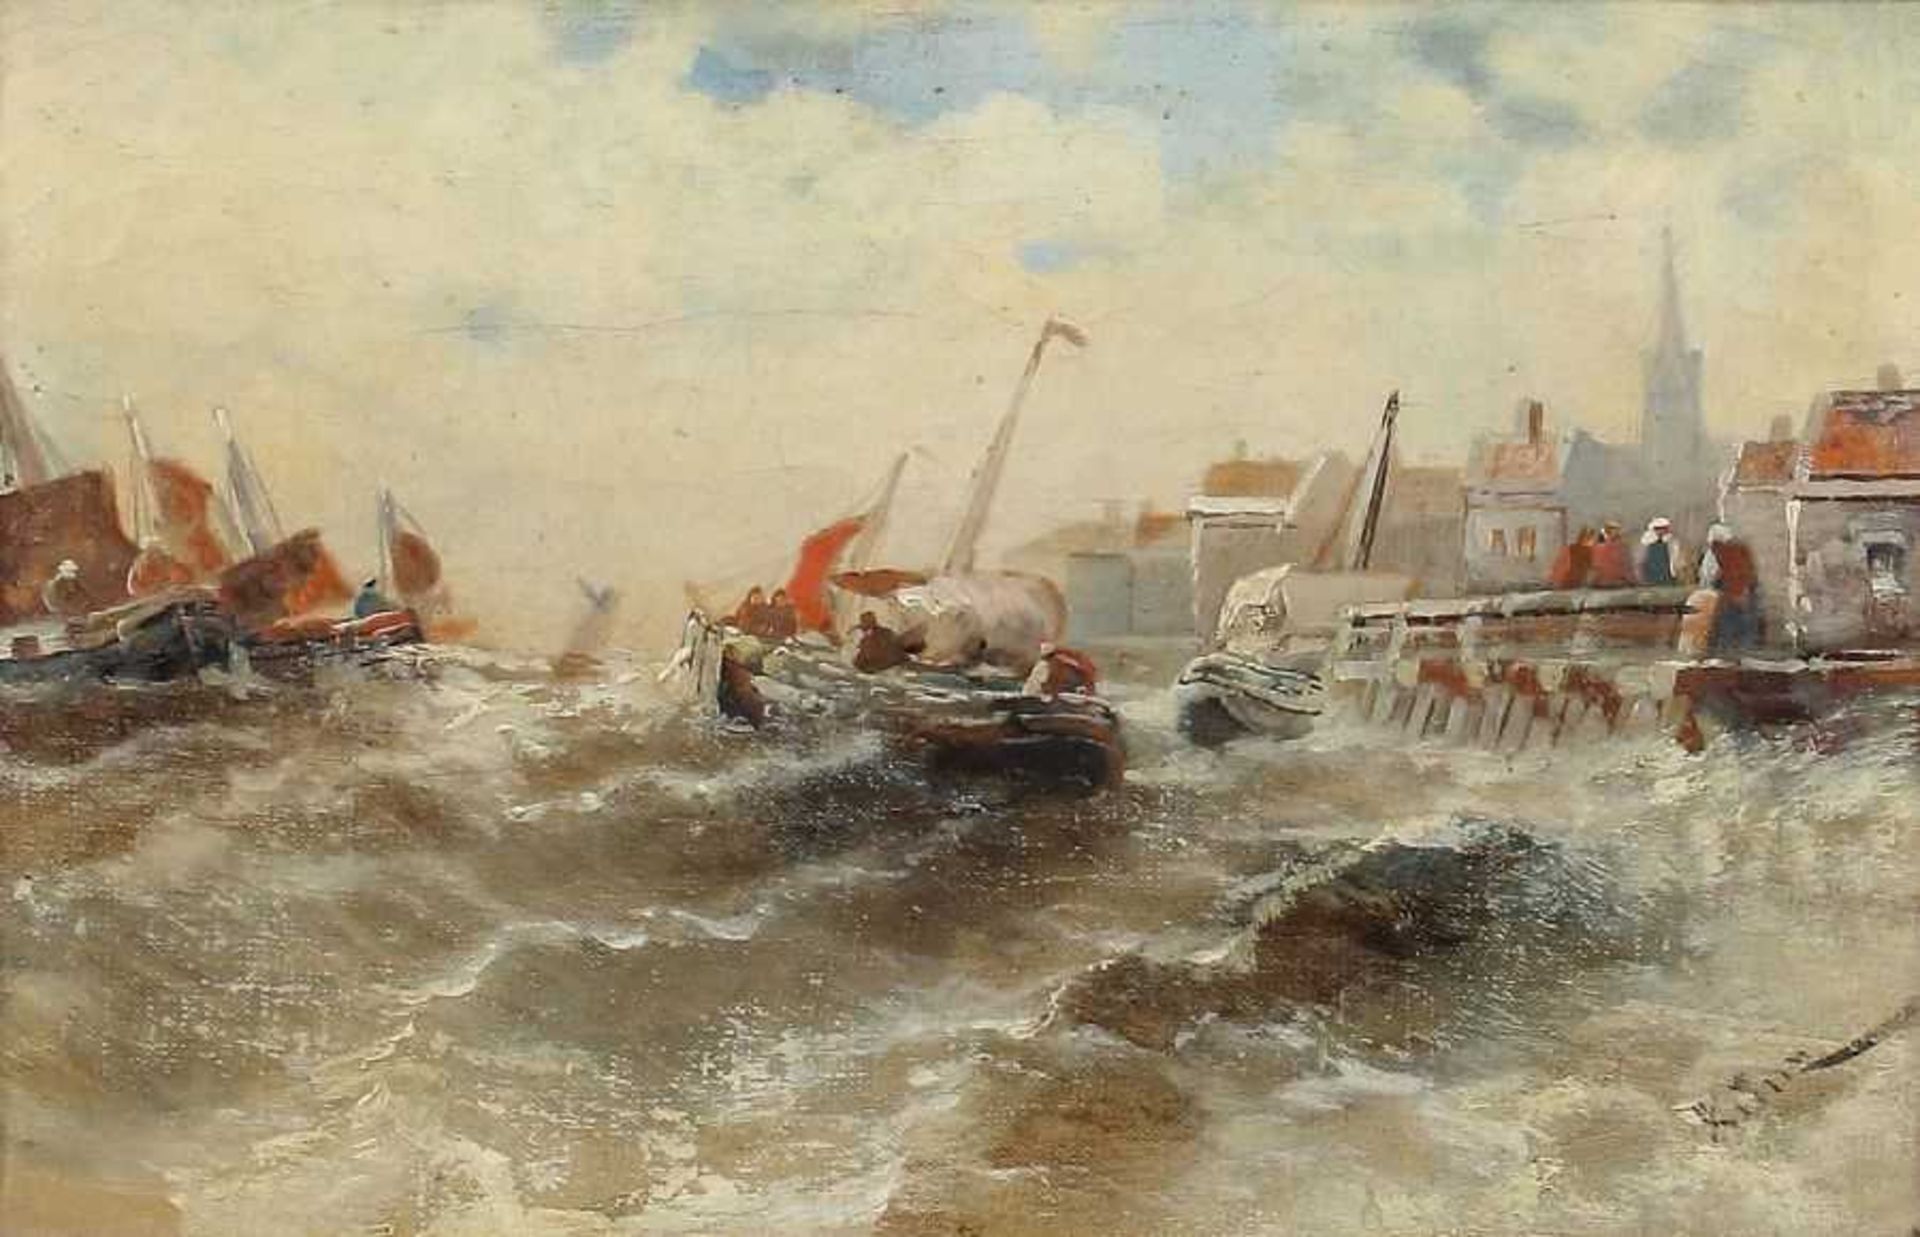 Kunz Marinemaler des 19./20. Jh.. "Fischerboote vor dem Hafen bei stürmischer See", bewegte Szene